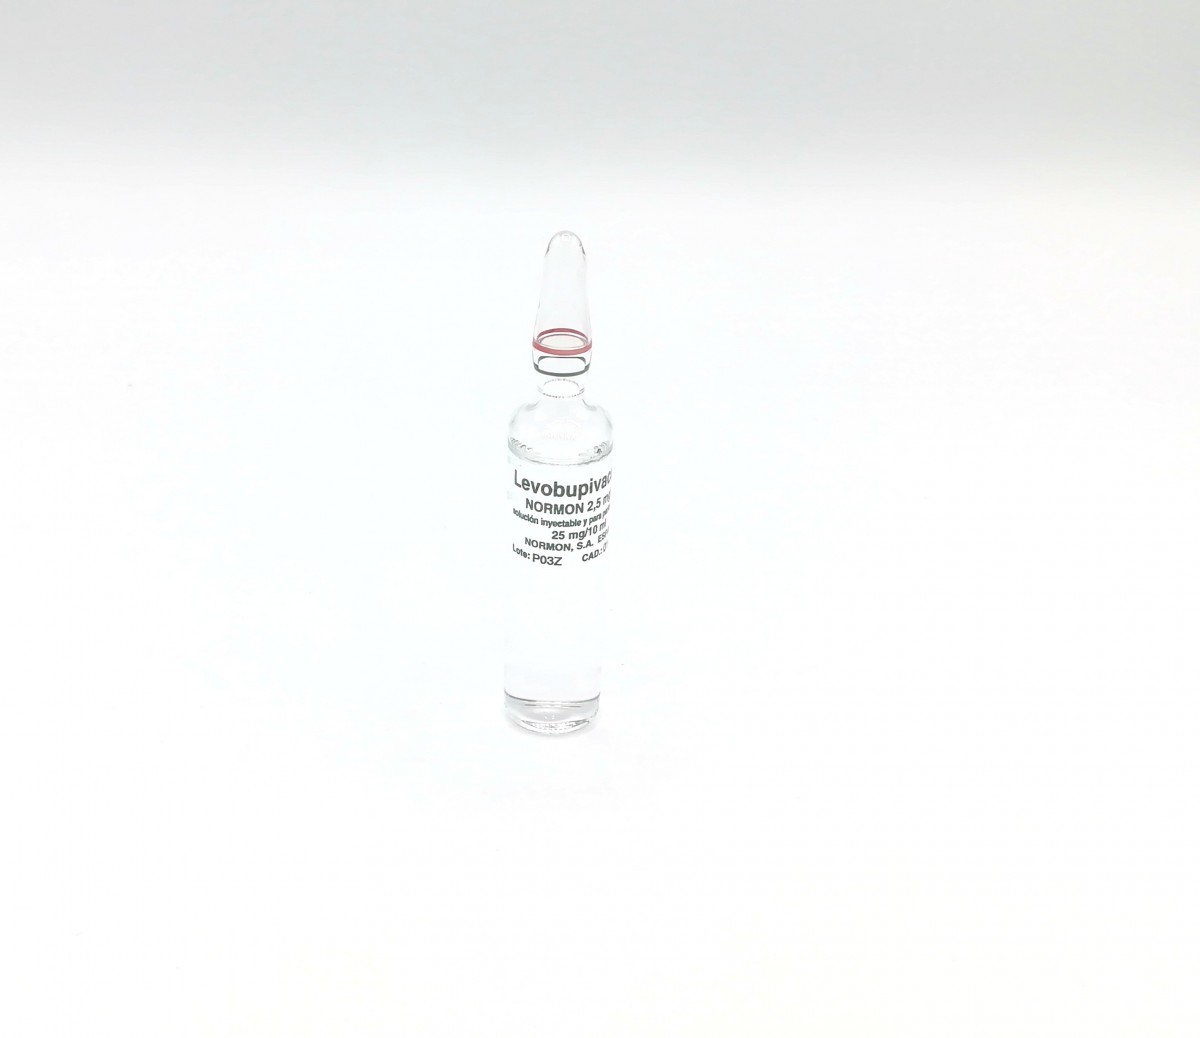 LEVOBUPIVACAINA NORMON 2,5 MG/ML SOLUCION INYECTABLE Y PARA PERFUSION EFG , 10 ampollas de 10 ml fotografía de la forma farmacéutica.